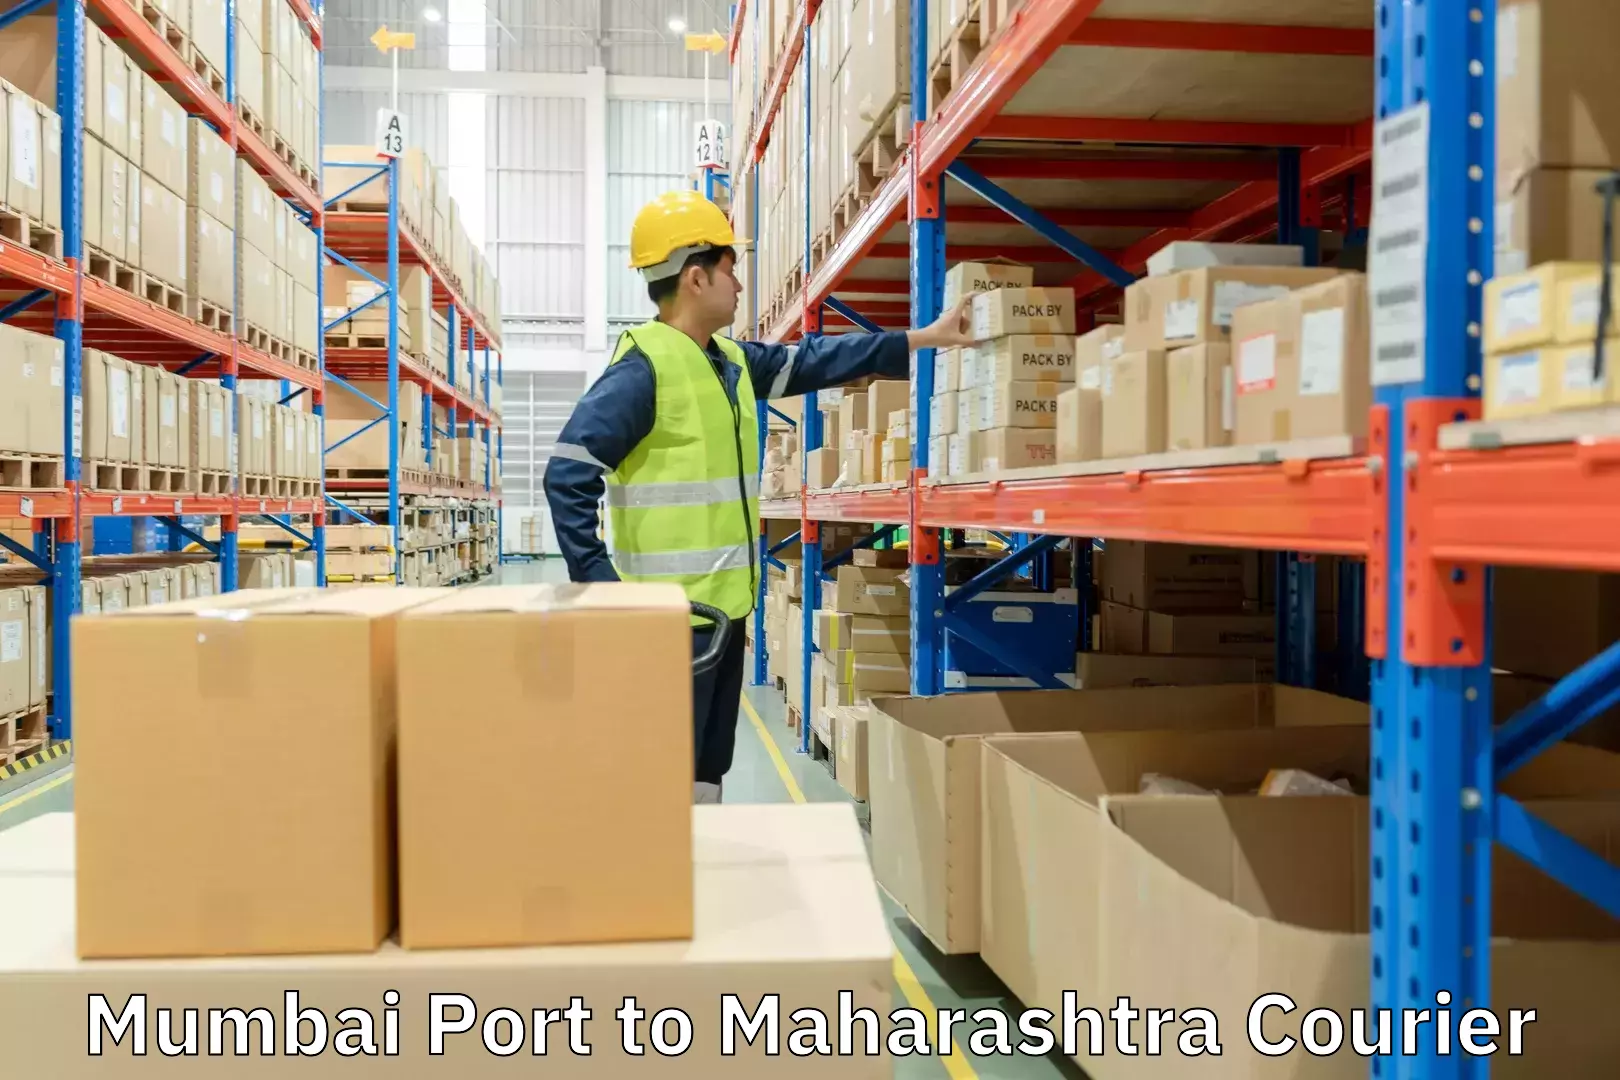 Express courier facilities Mumbai Port to Maharashtra